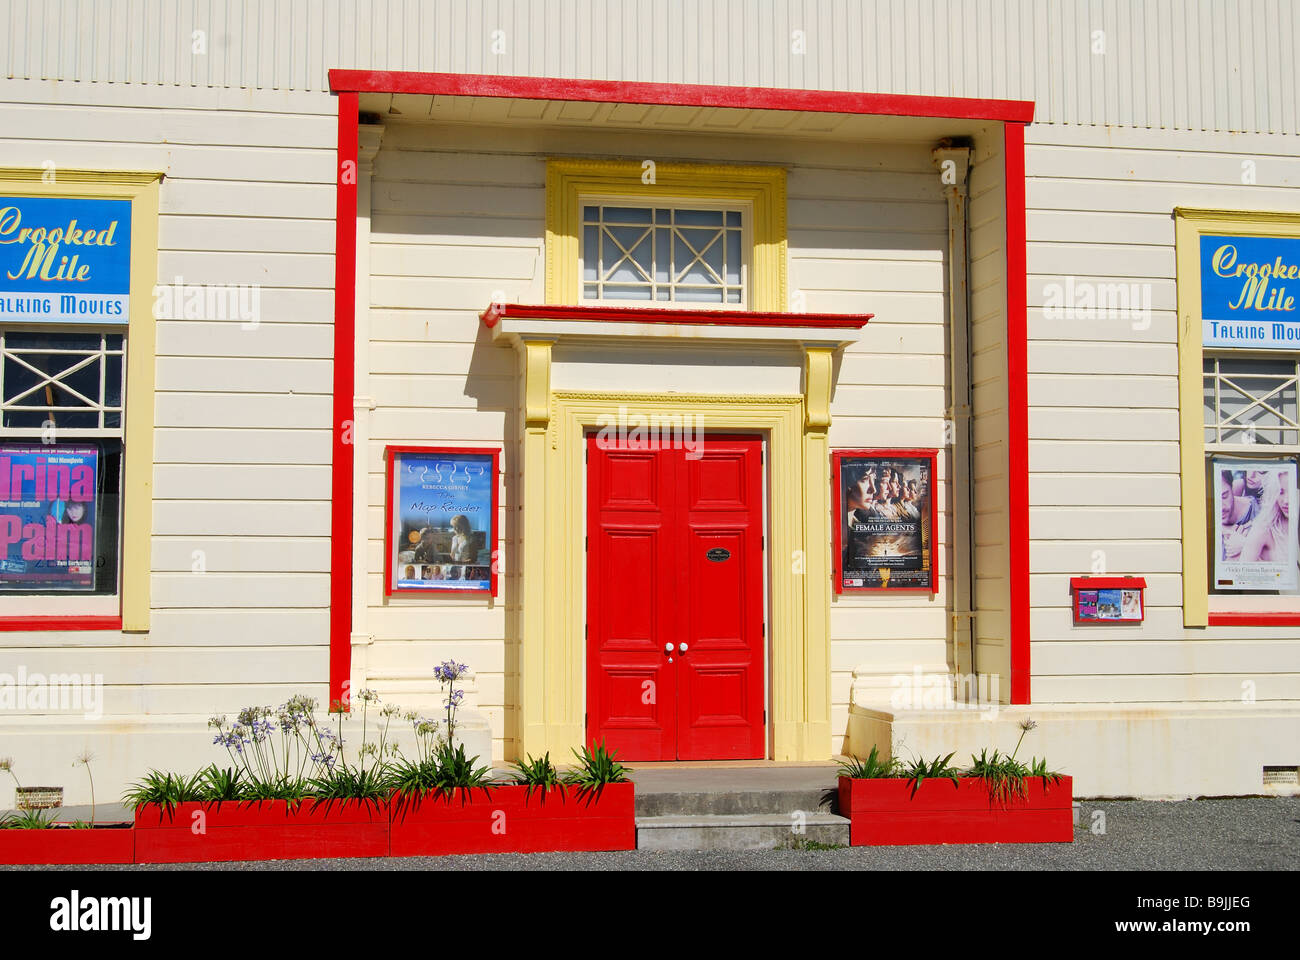 Crooked Mile cine parlante edificio, Revell Street, Hokitika, distrito de Westland, Costa oeste, Isla del Sur, Nueva Zelanda Foto de stock